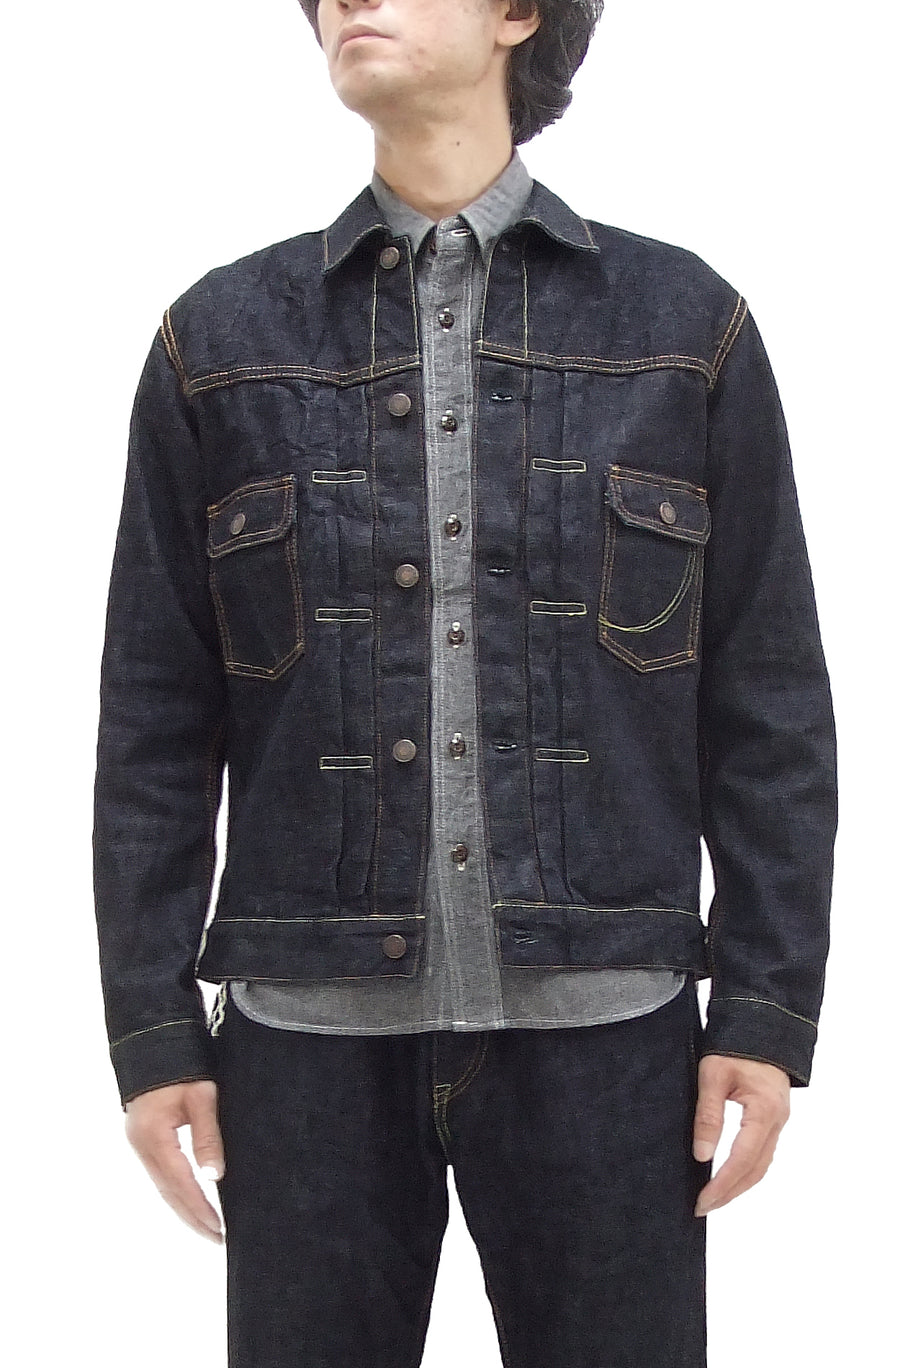 Momotaro Jeans Denim Jacket Men's Slim Fit Type 2 Style 14.7 oz. Deep –  RODEO-JAPAN Pine-Avenue Clothes shop